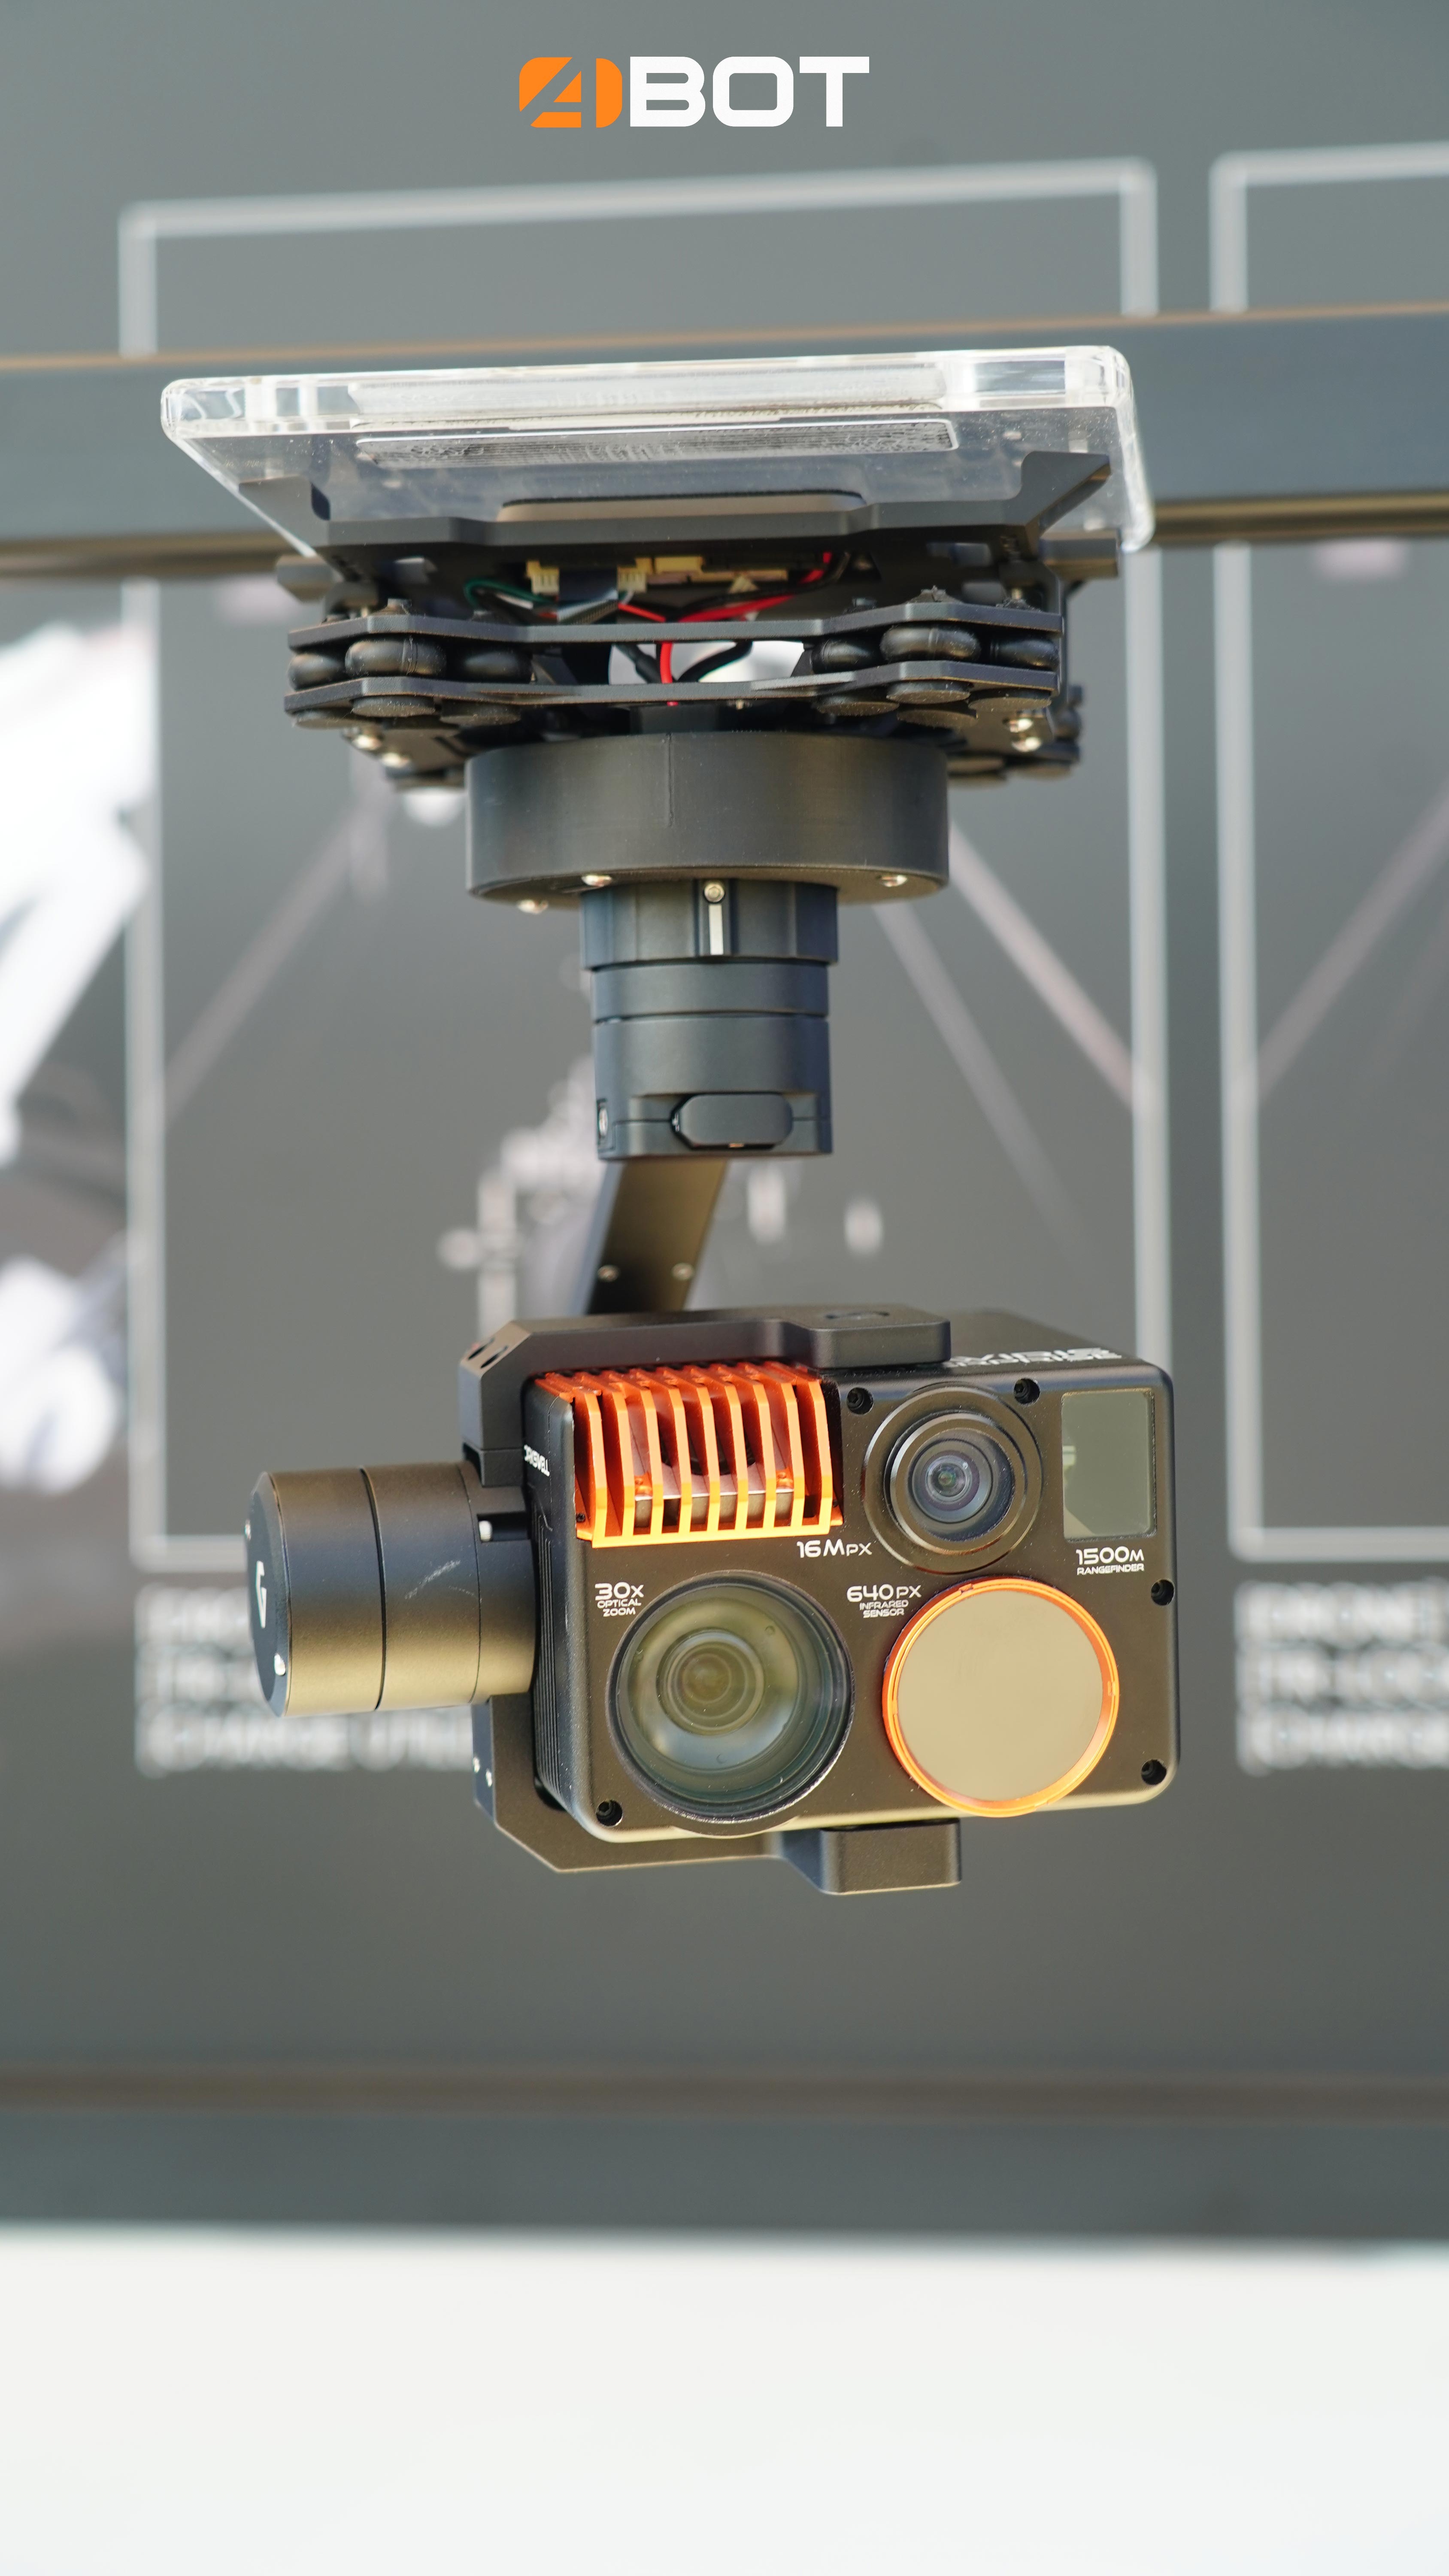 Hexadrone caméra pour tundra 2